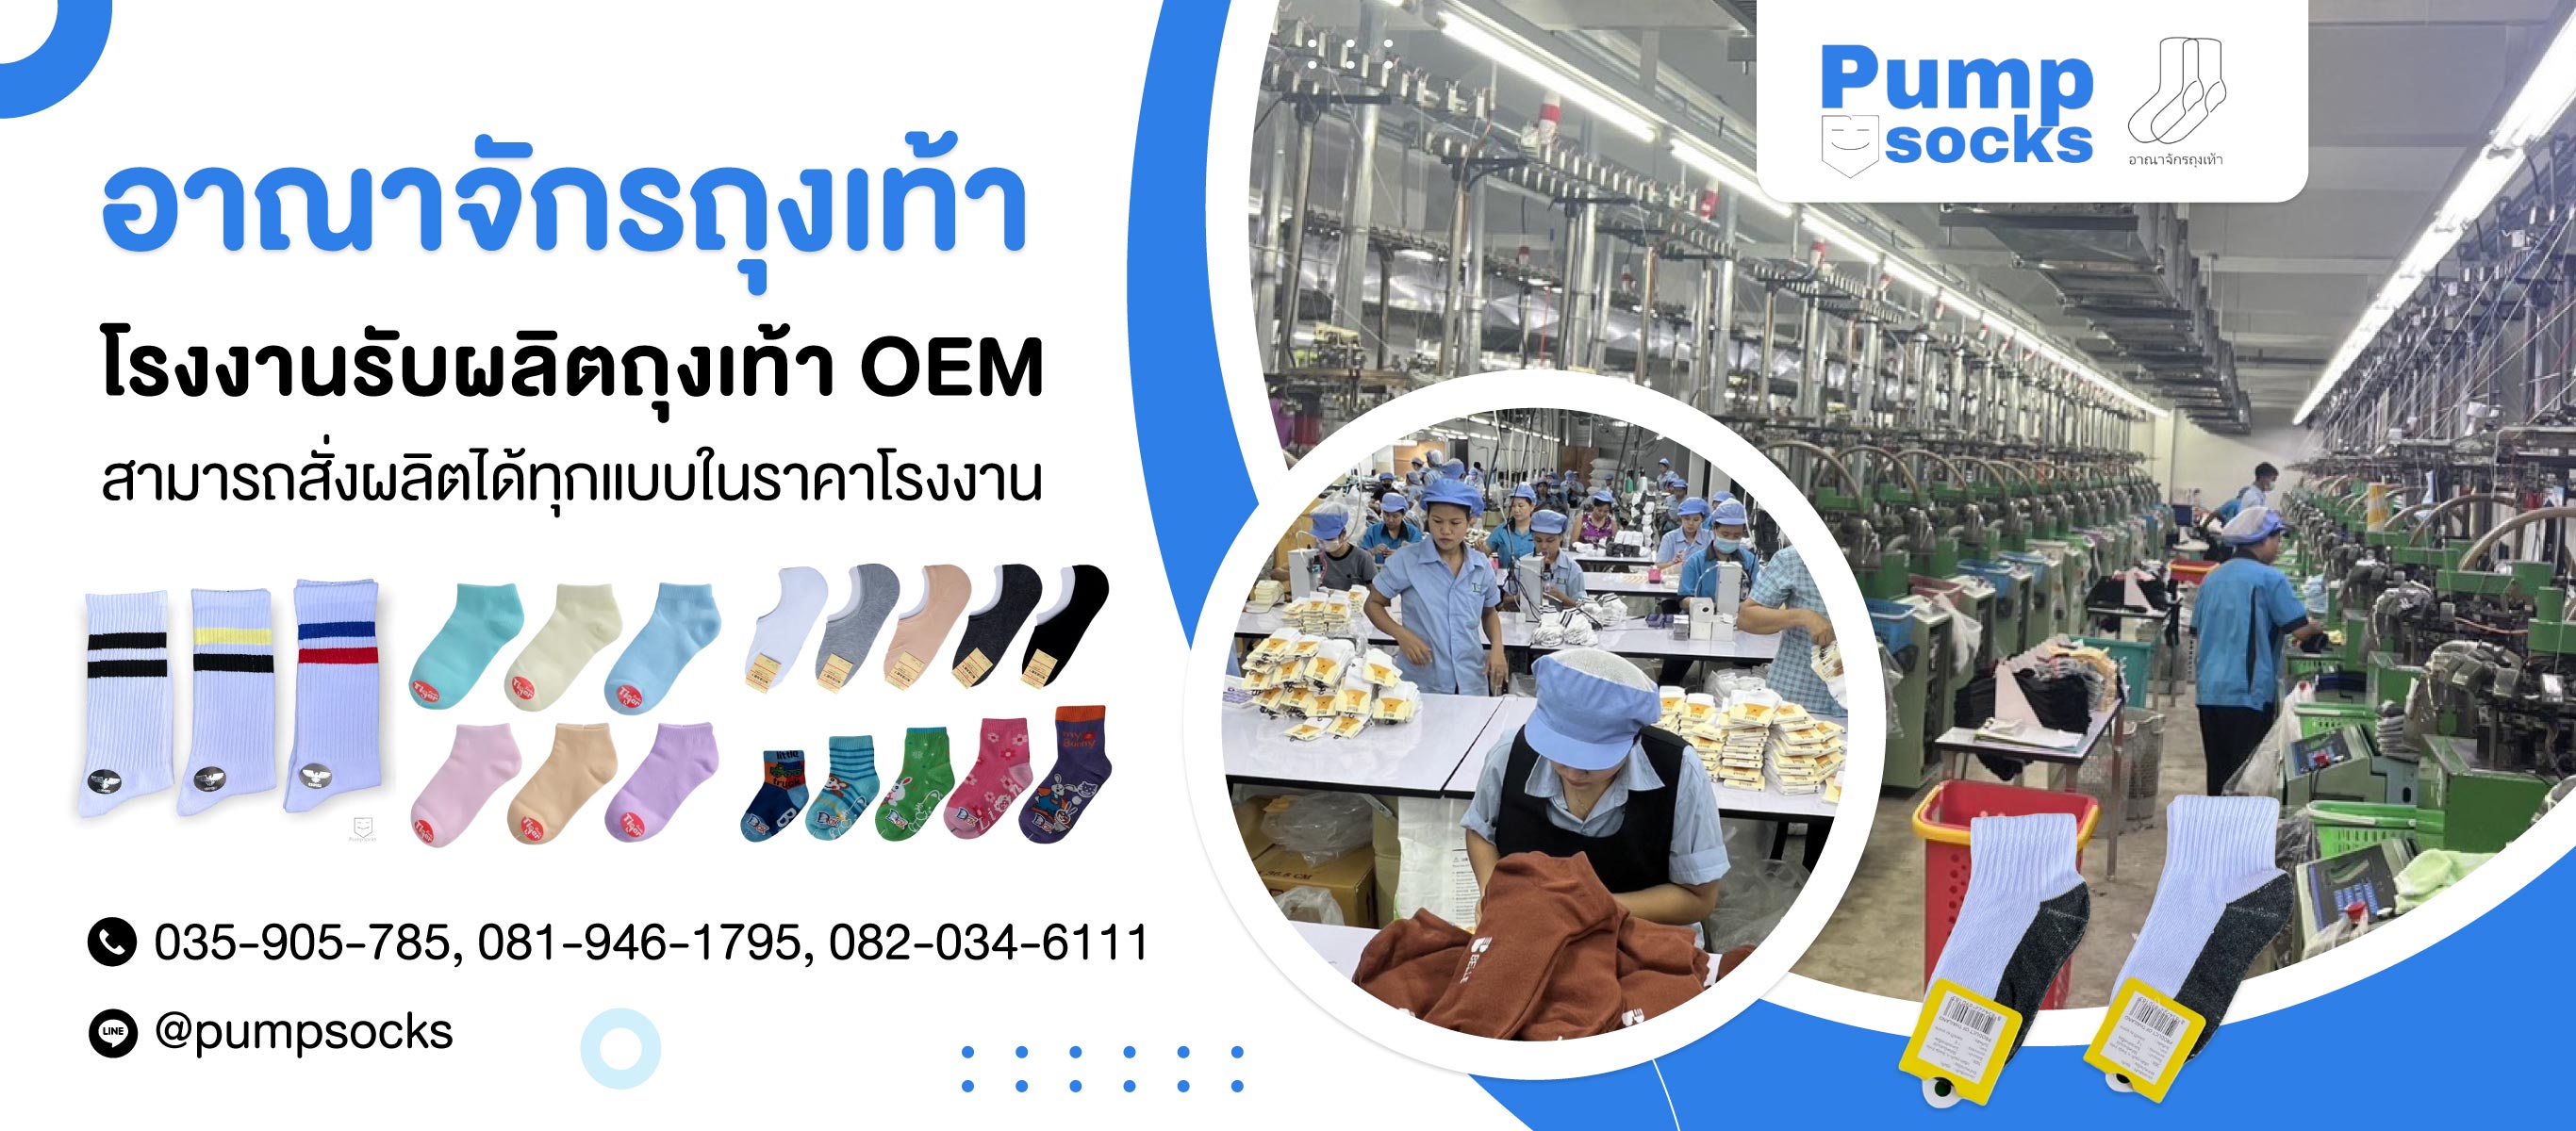 โรงงานรับผลิตถุงเท้า oem